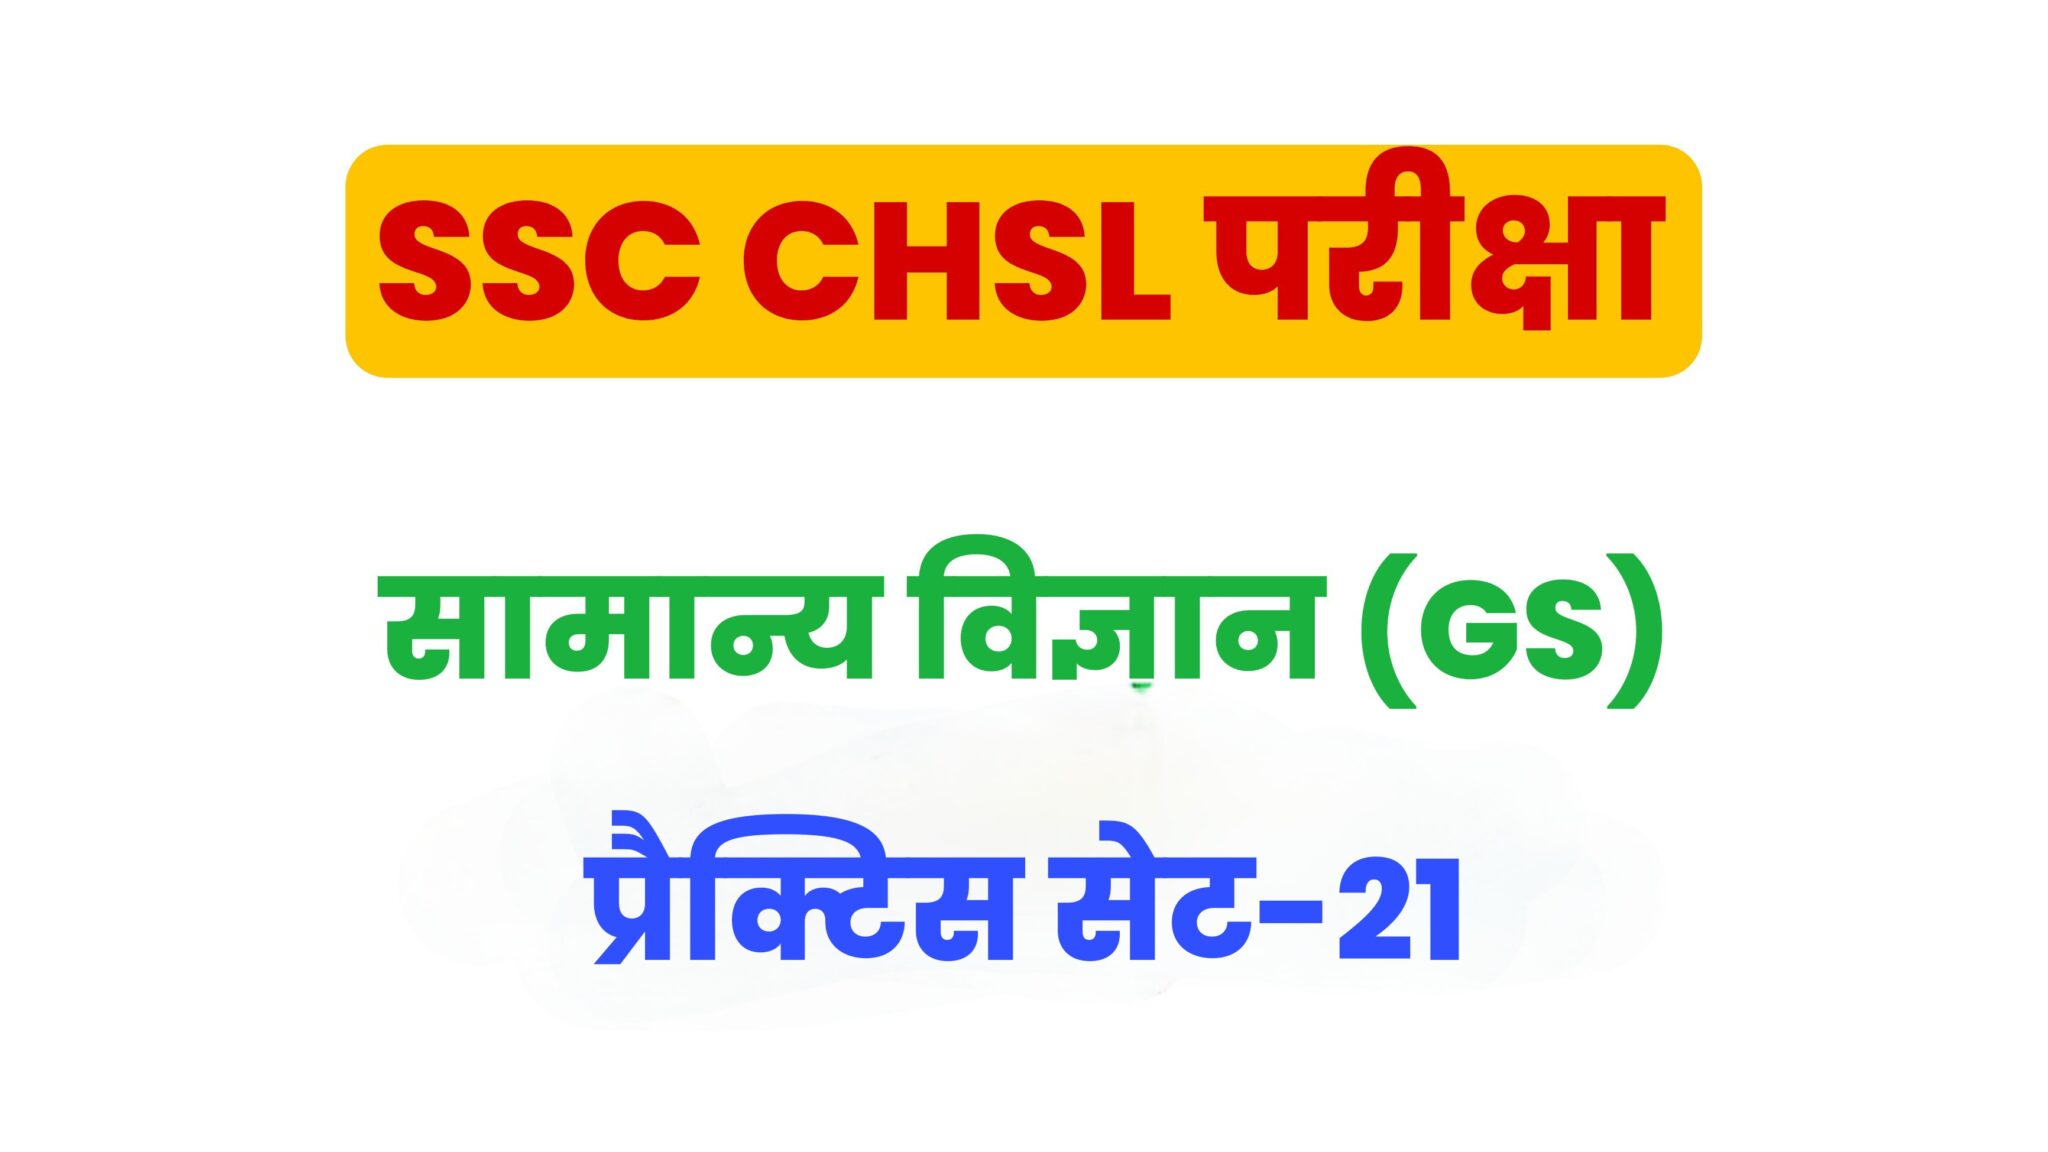 SSC CHSL General Science  प्रैक्टिस सेट 21 : सामान्य विज्ञान के 25 बेहद महत्वपूर्ण प्रश्न